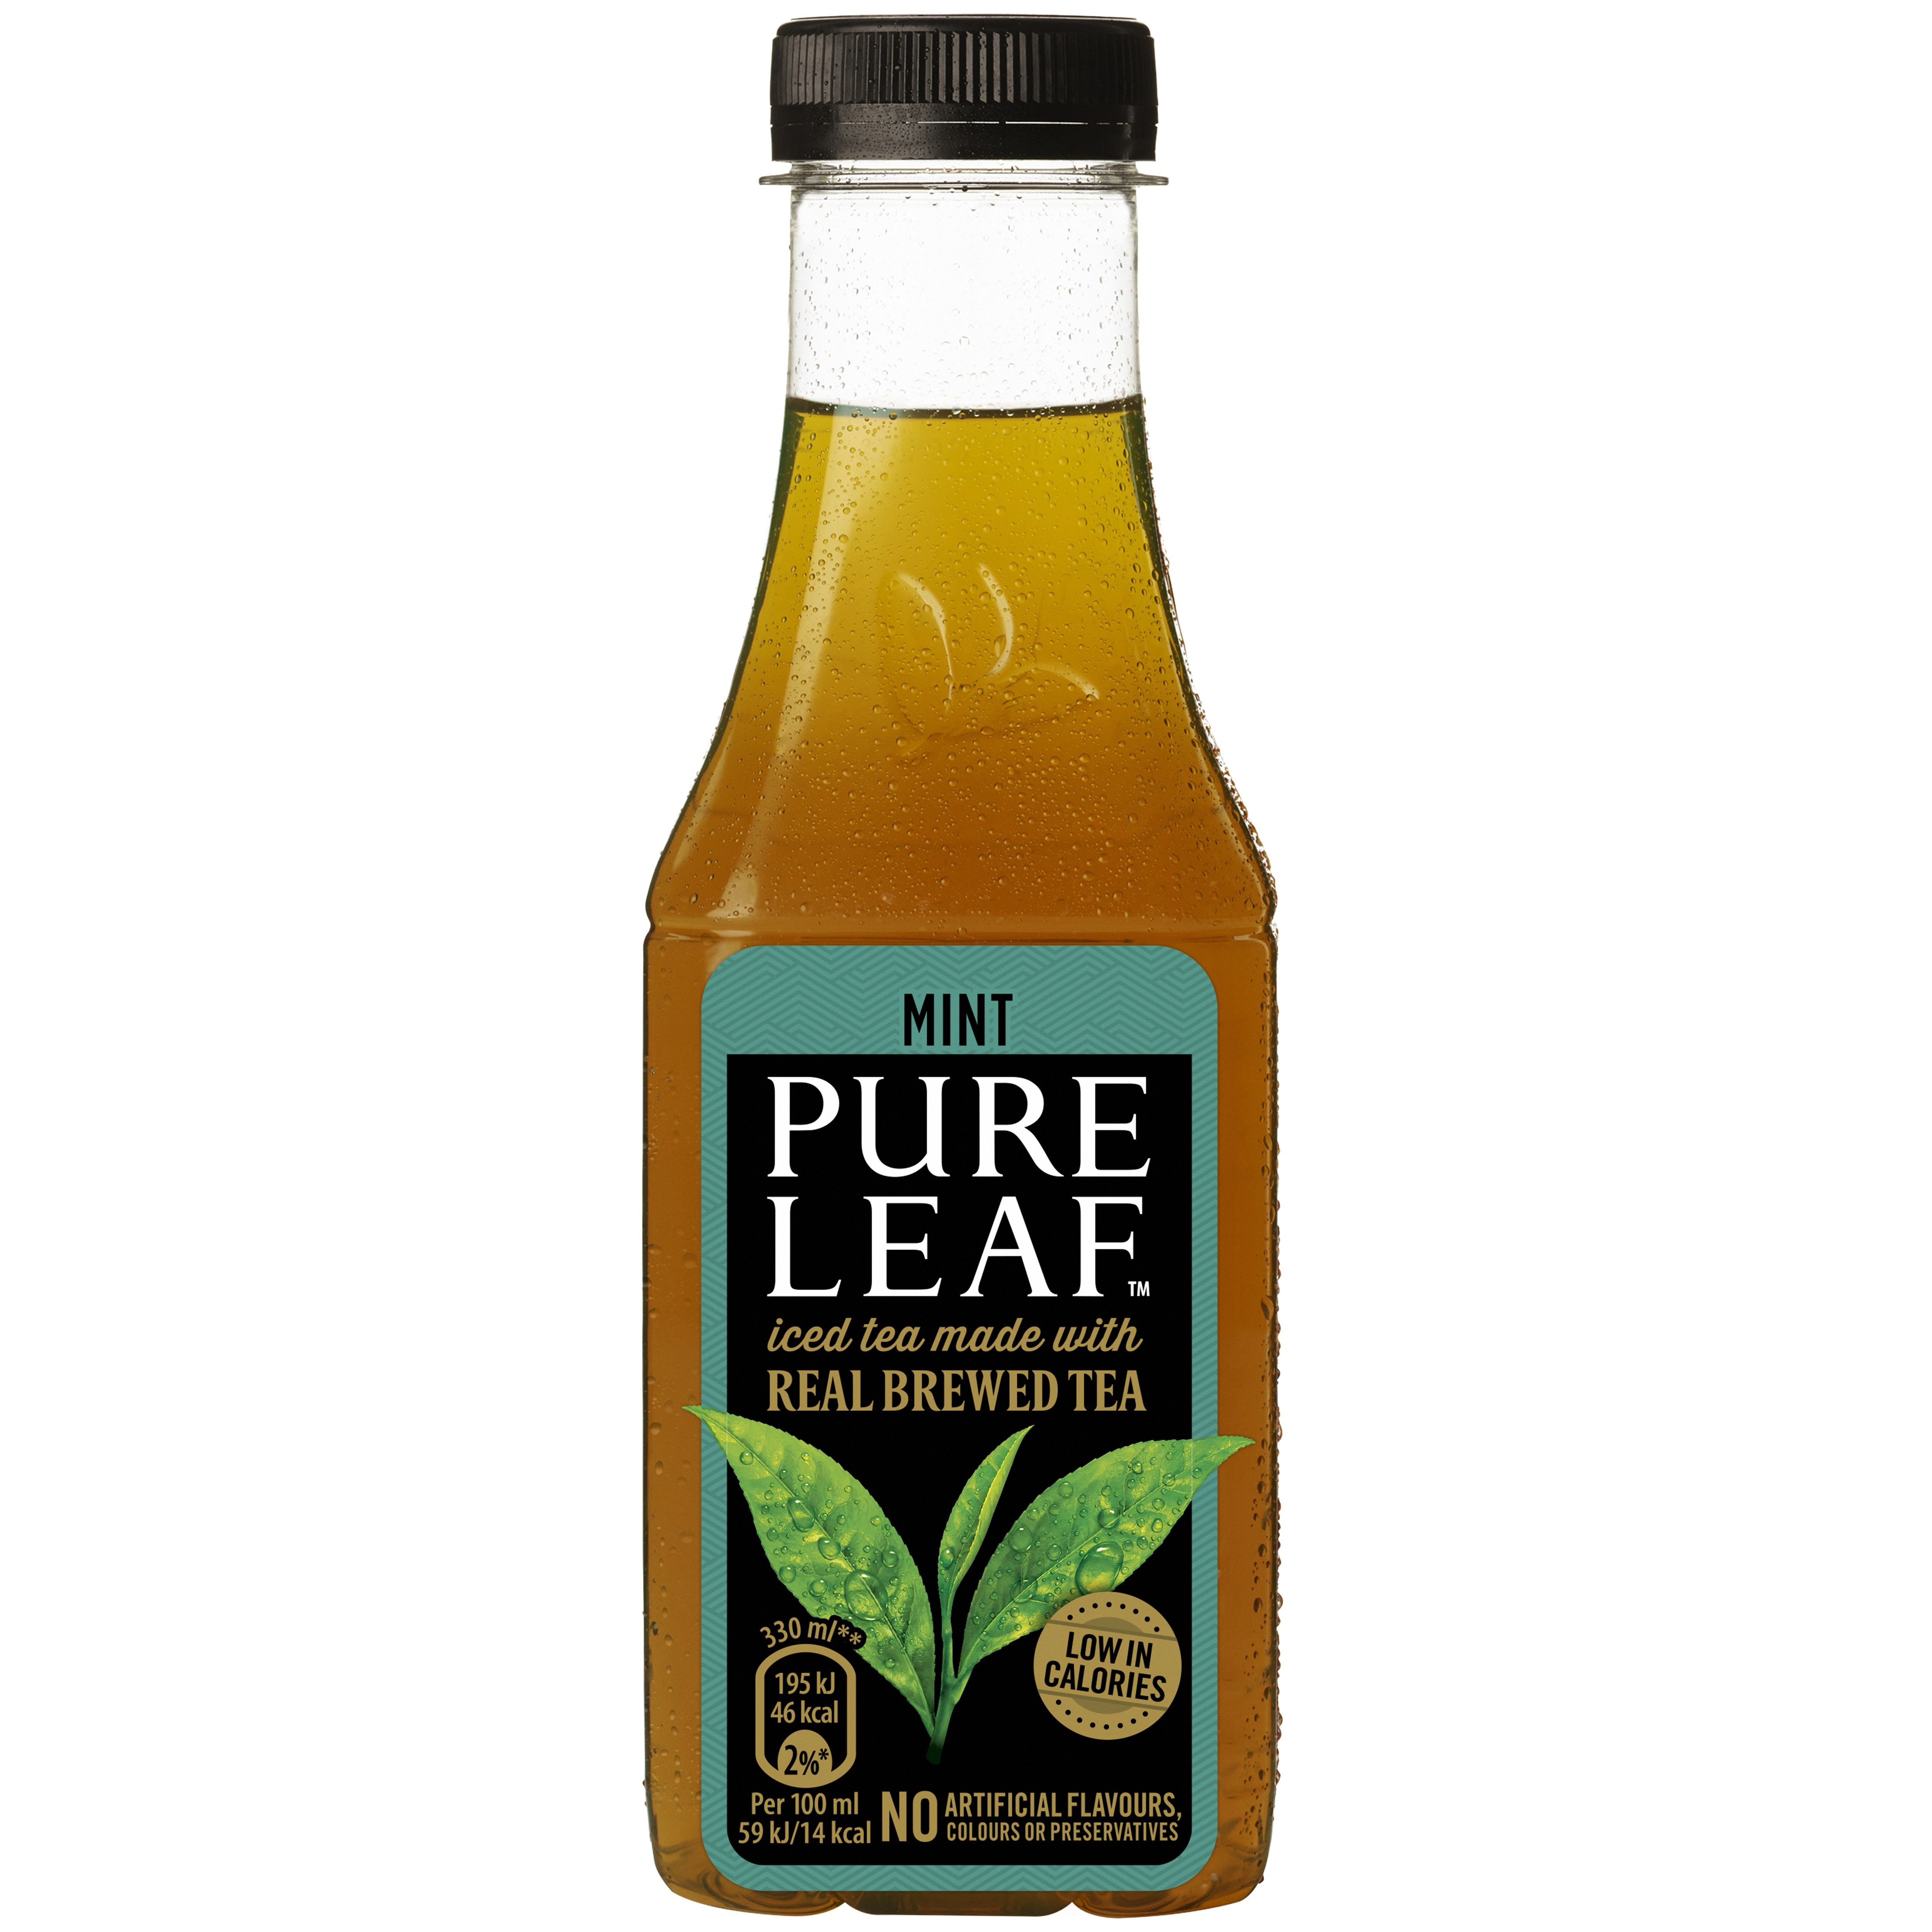 Pure Leaf Tea Mint PET Munt The 12x33cl